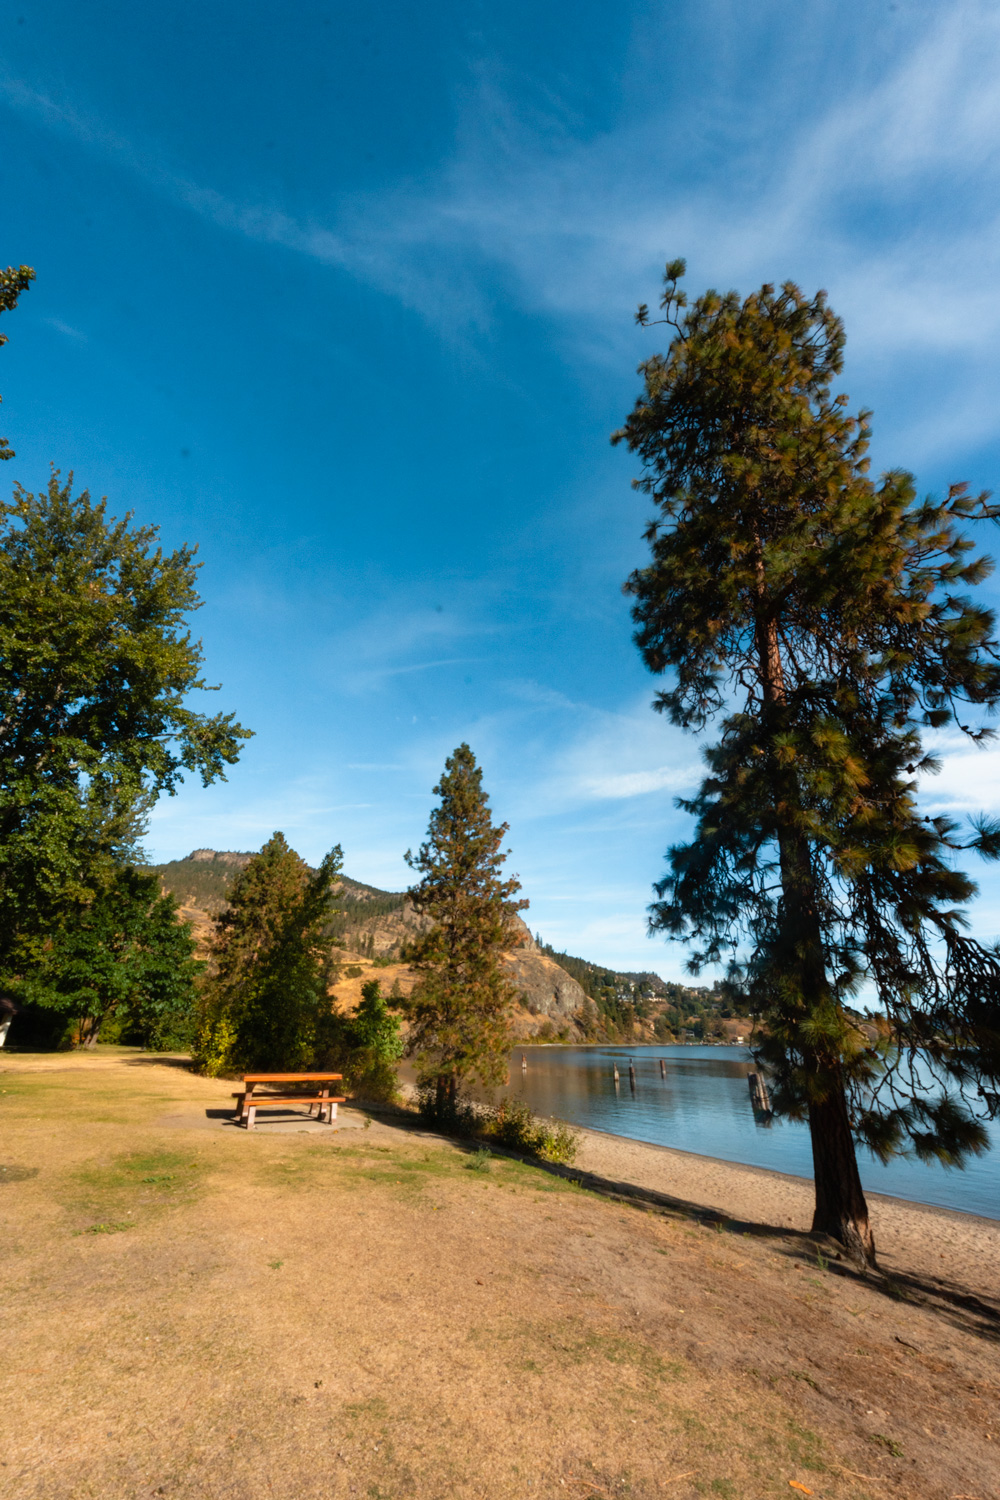 Day-use beach and picnic area at Bear Creek in Kelowna, BC